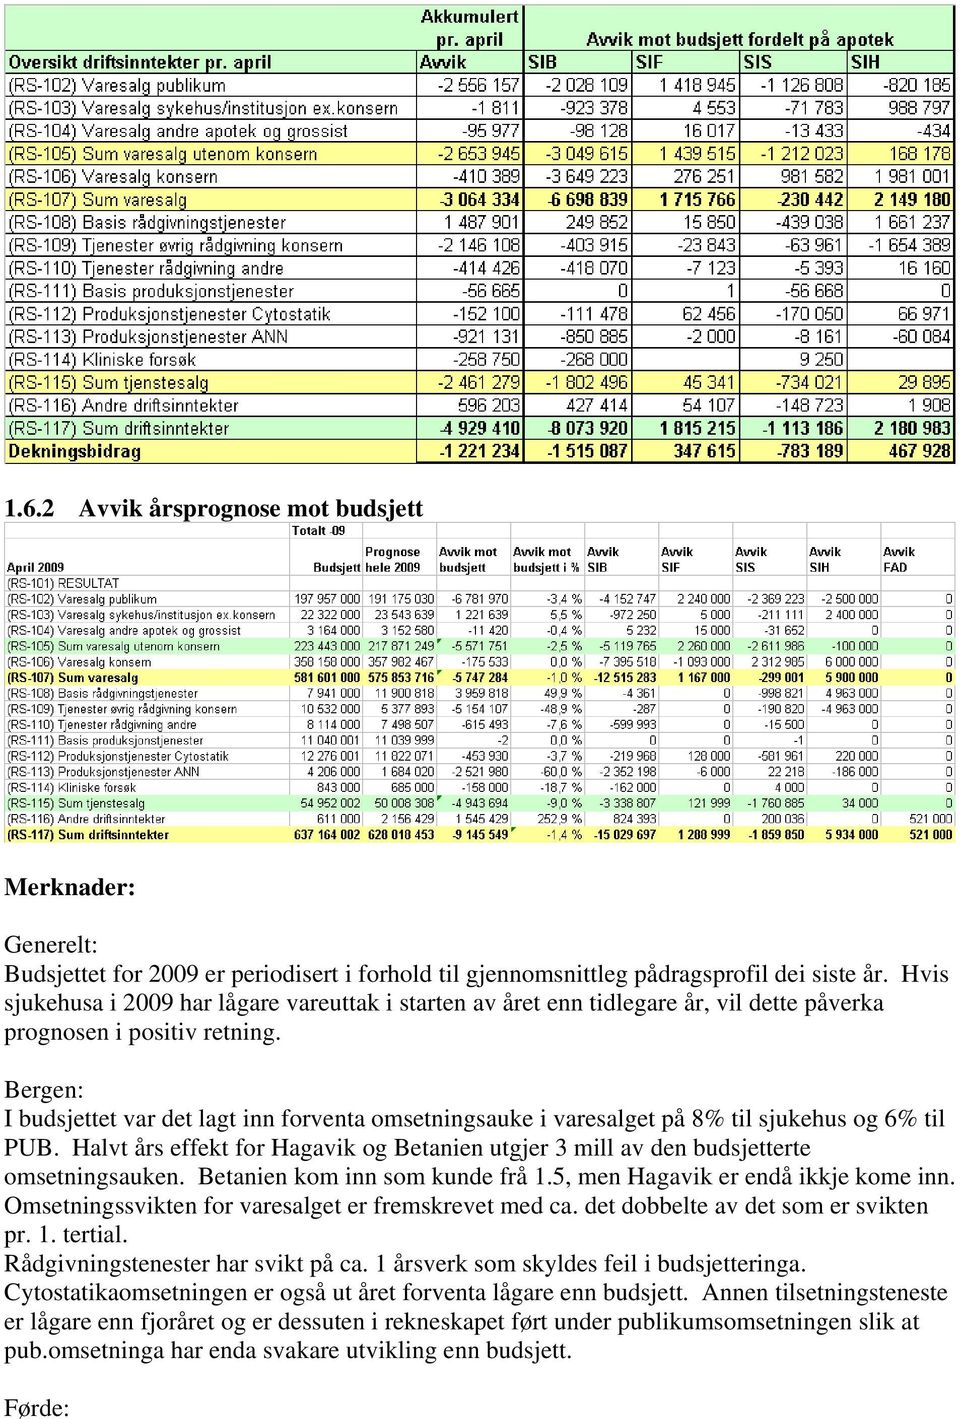 Bergen: I budsjettet var det lagt inn forventa omsetningsauke i varesalget på 8% til sjukehus og 6% til PUB. Halvt års effekt for Hagavik og Betanien utgjer 3 mill av den budsjetterte omsetningsauken.